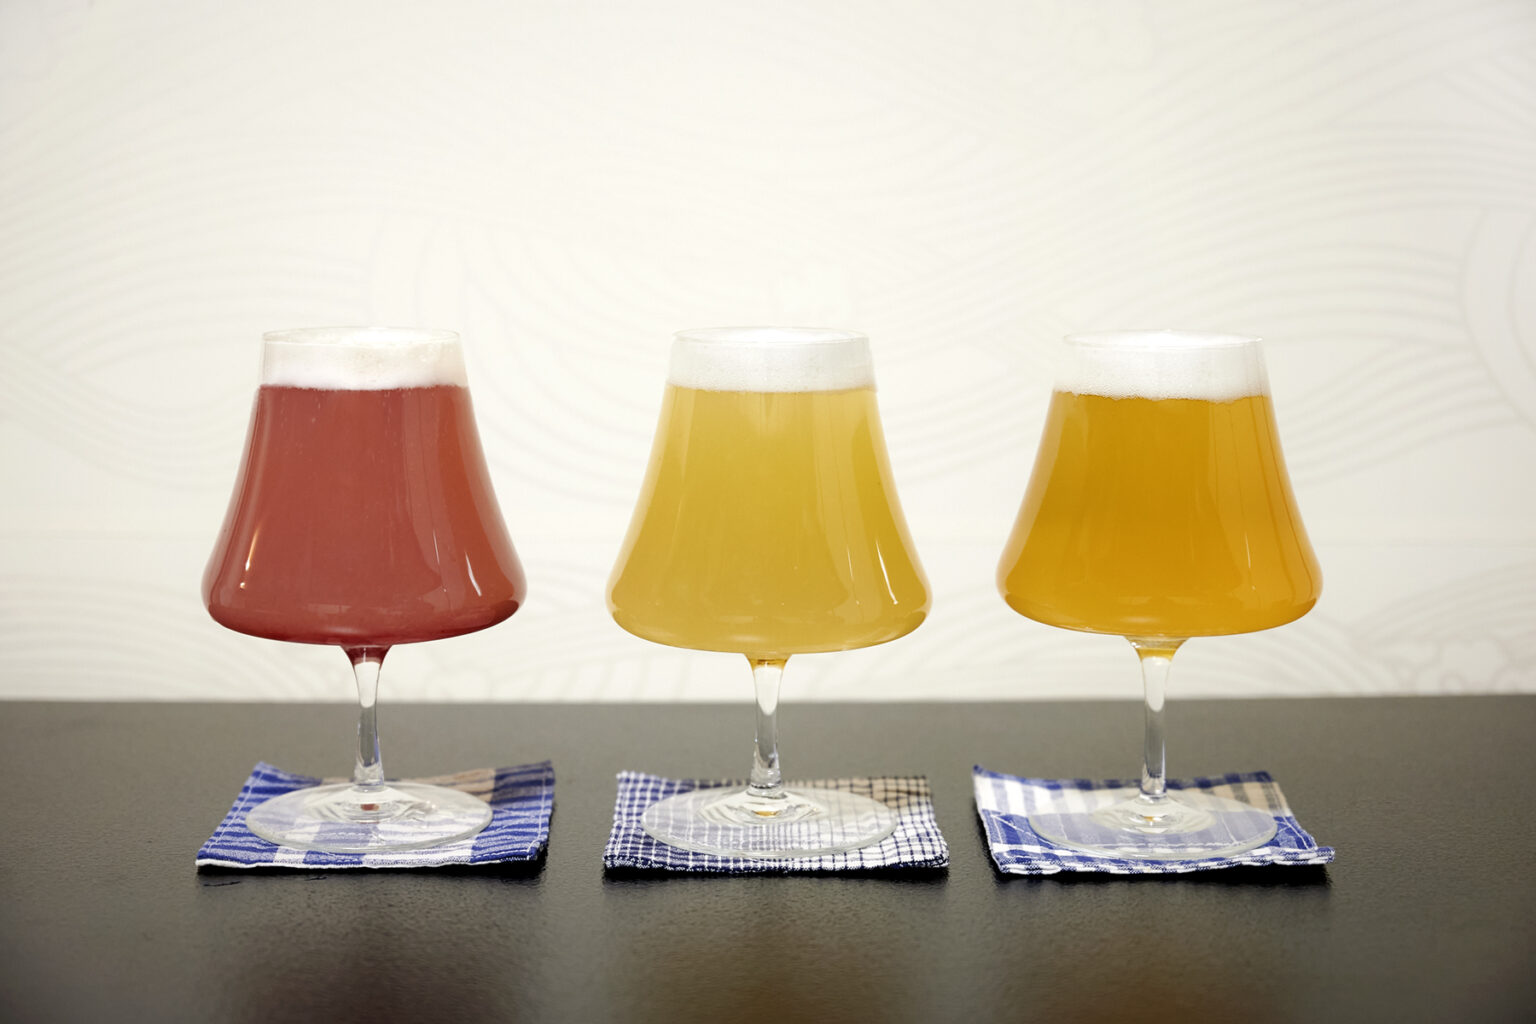 第1弾として作られた「開眼寺ビール」は全3種類。並べると色鮮やかでかわいらしい。